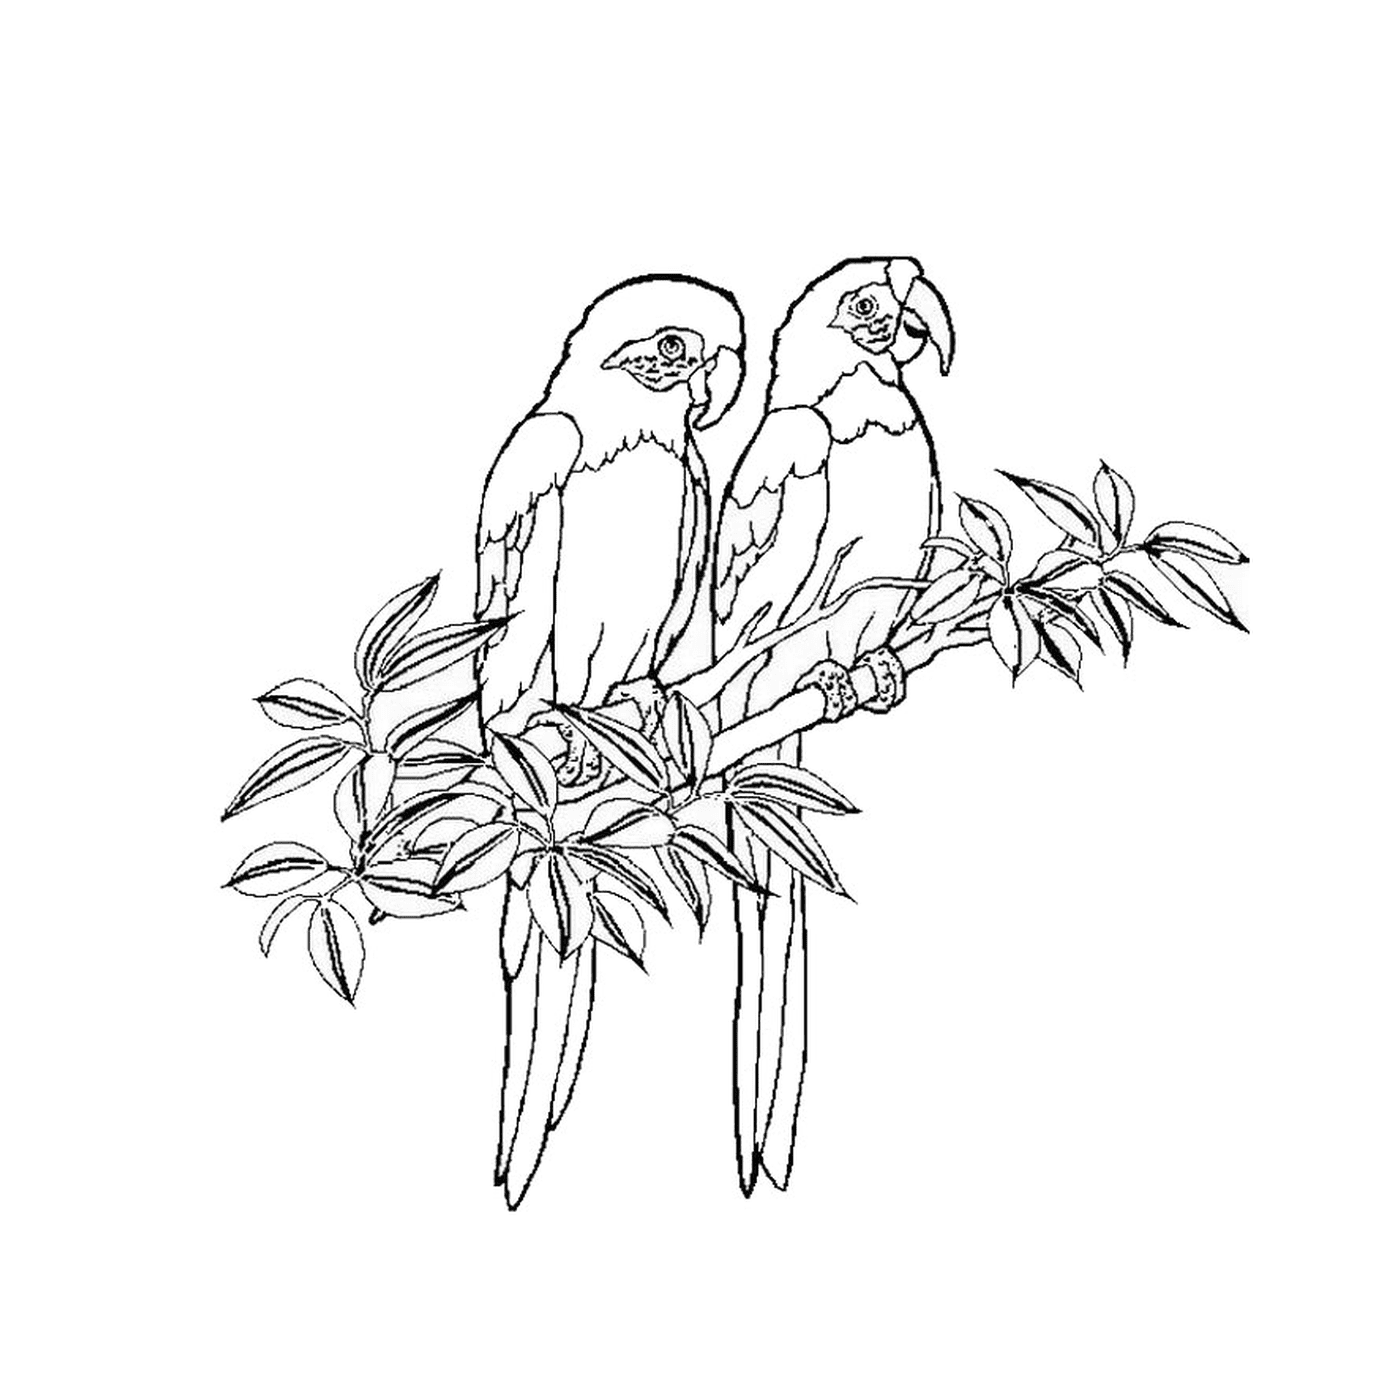  Dos pelucas sentadas en una rama de árbol 